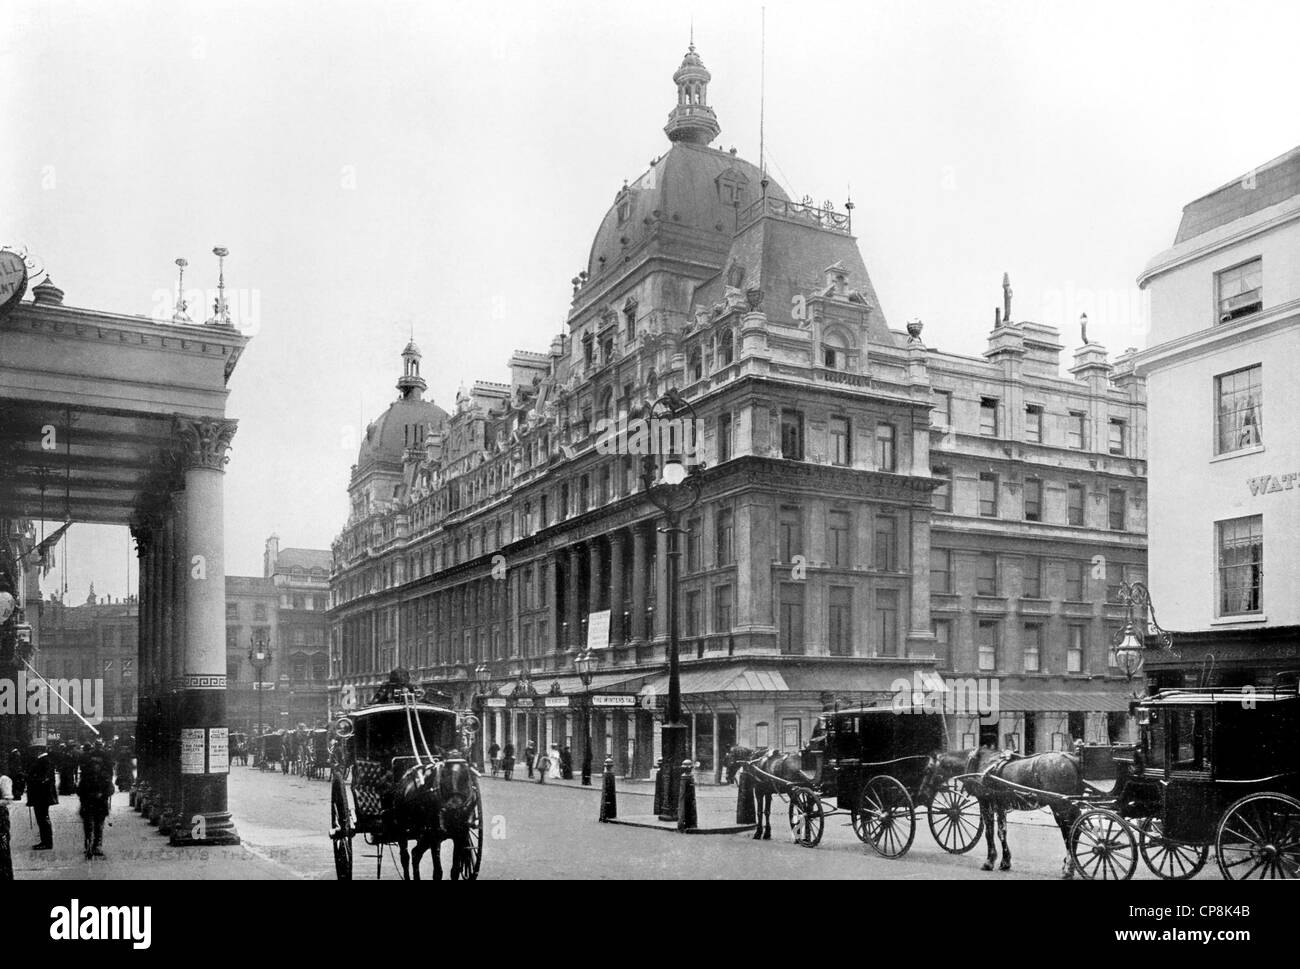 Photographie ancienne du 19ème siècle, Sa Majesté' Theatre, Westminster, Londres, Angleterre Banque D'Images